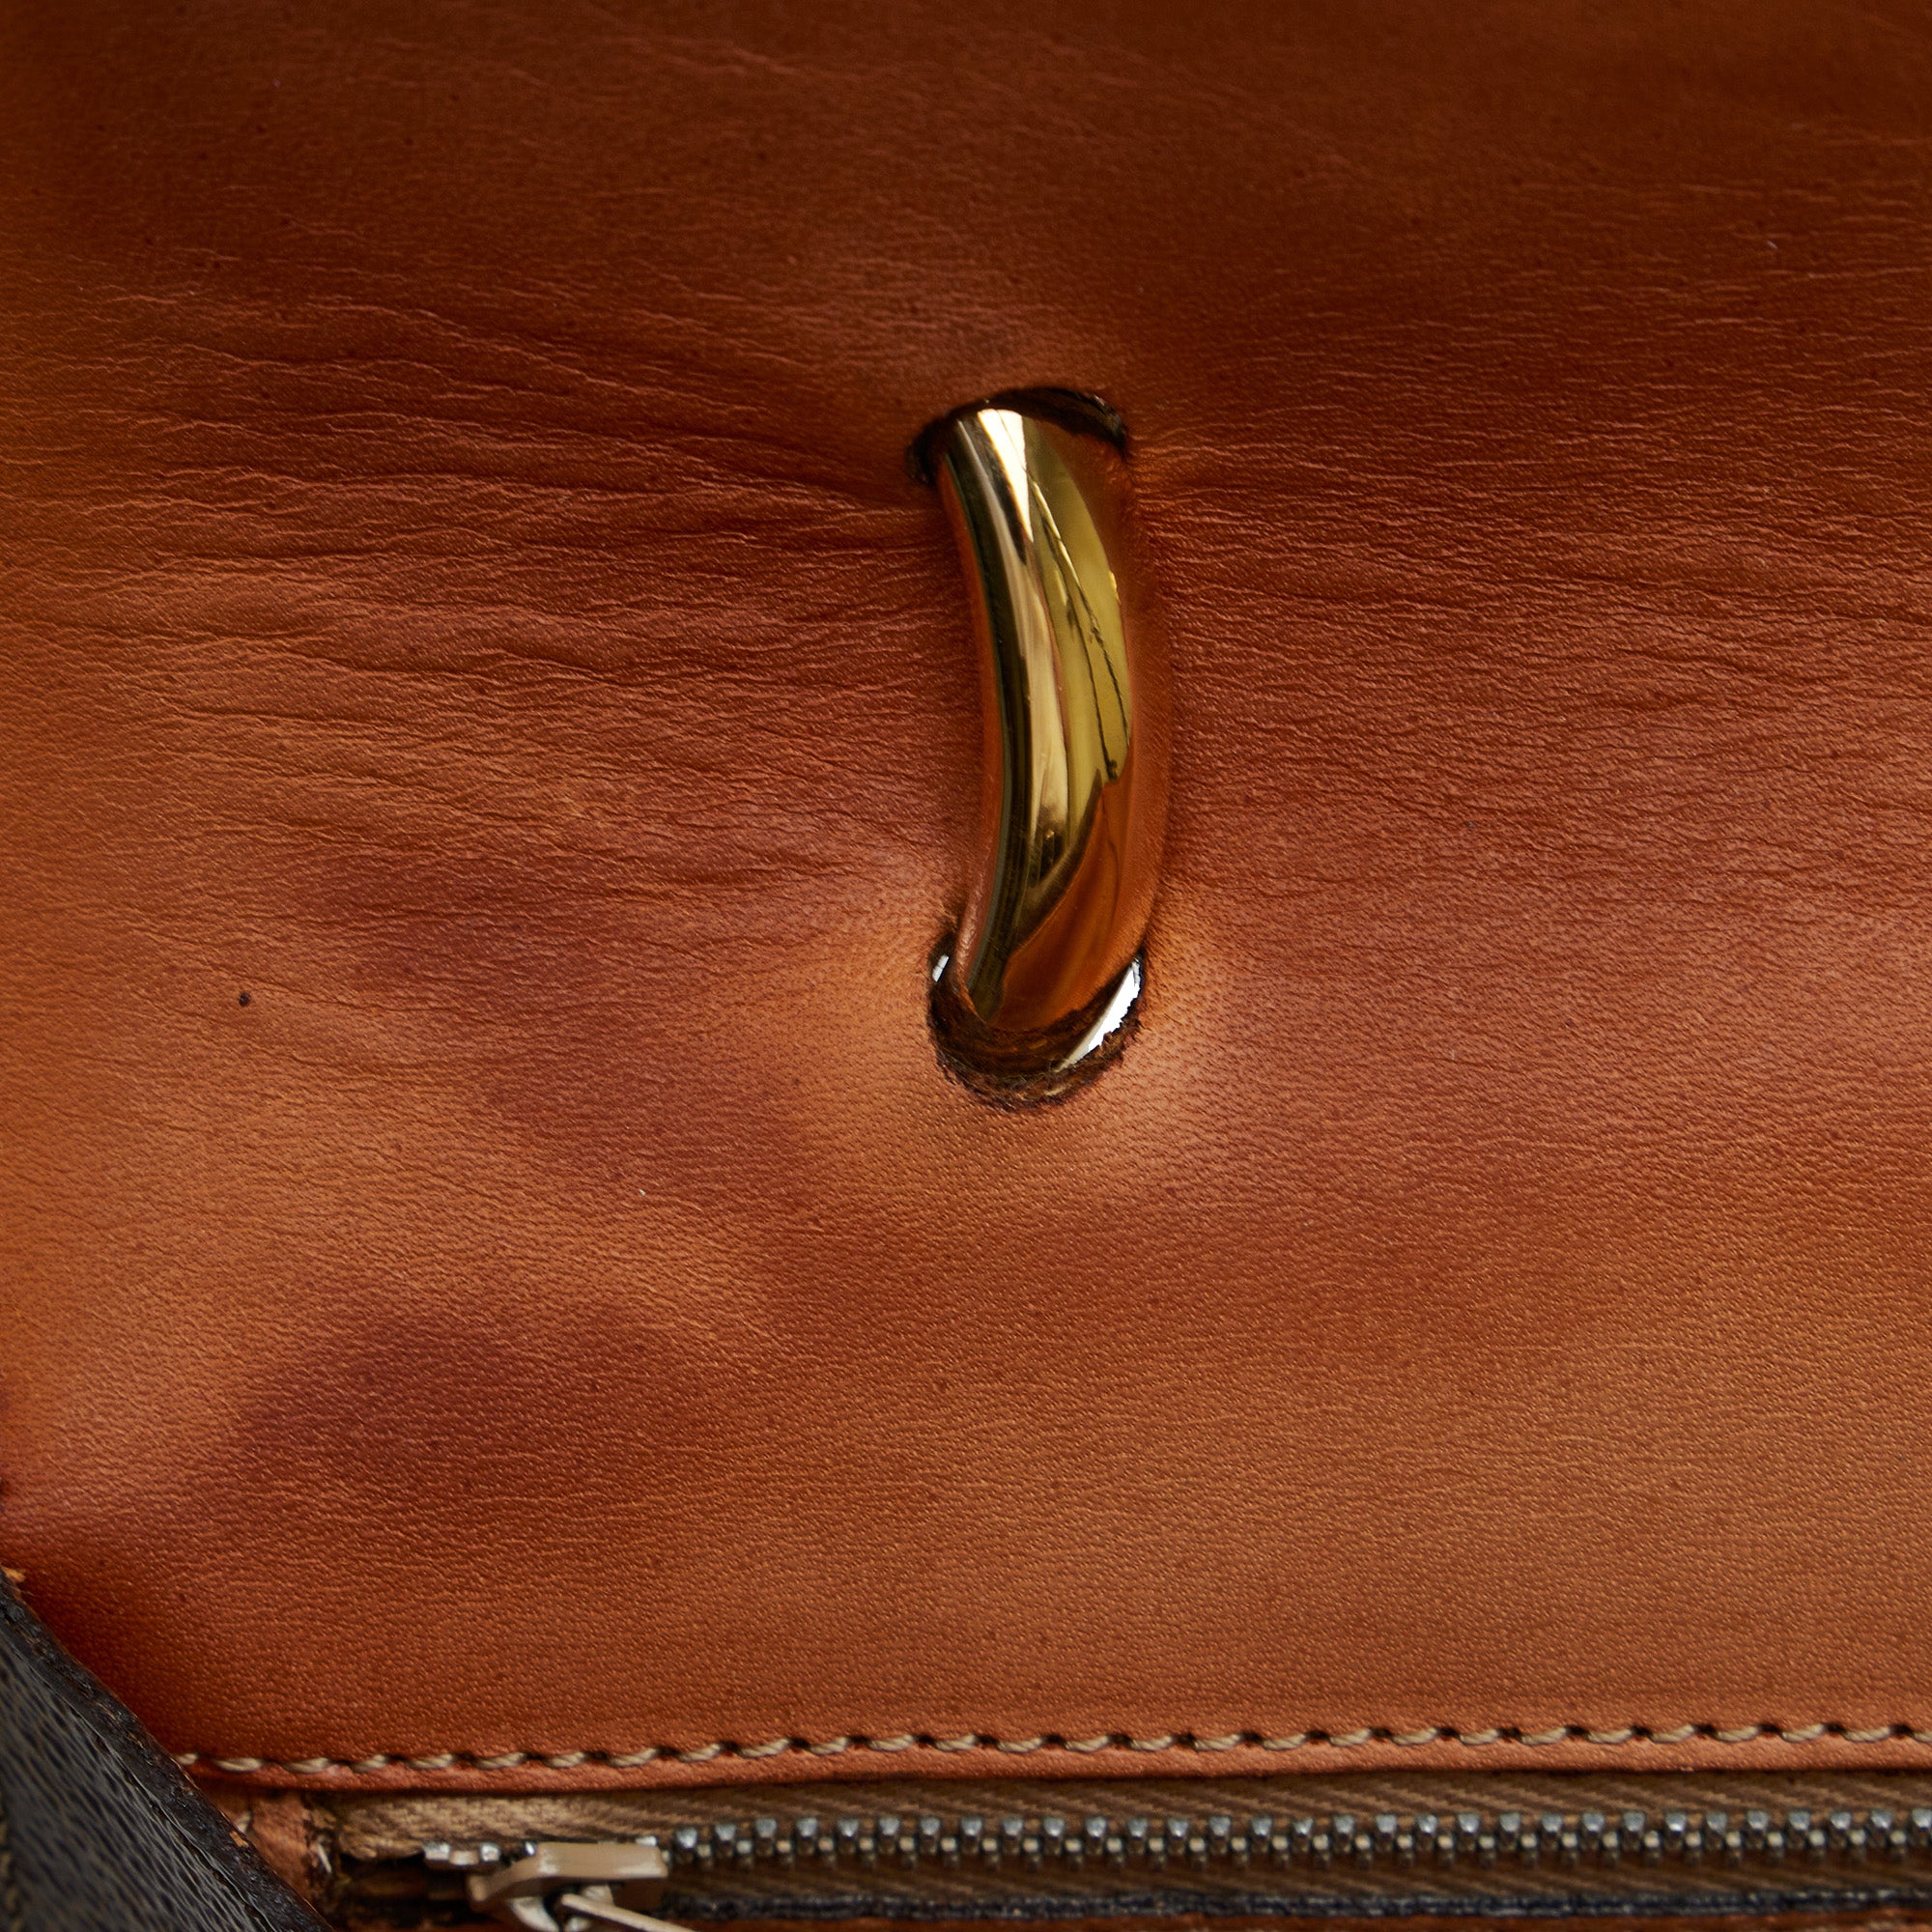 Celine Celine Macadam Pattern Minoboston Handbag Brown P14353